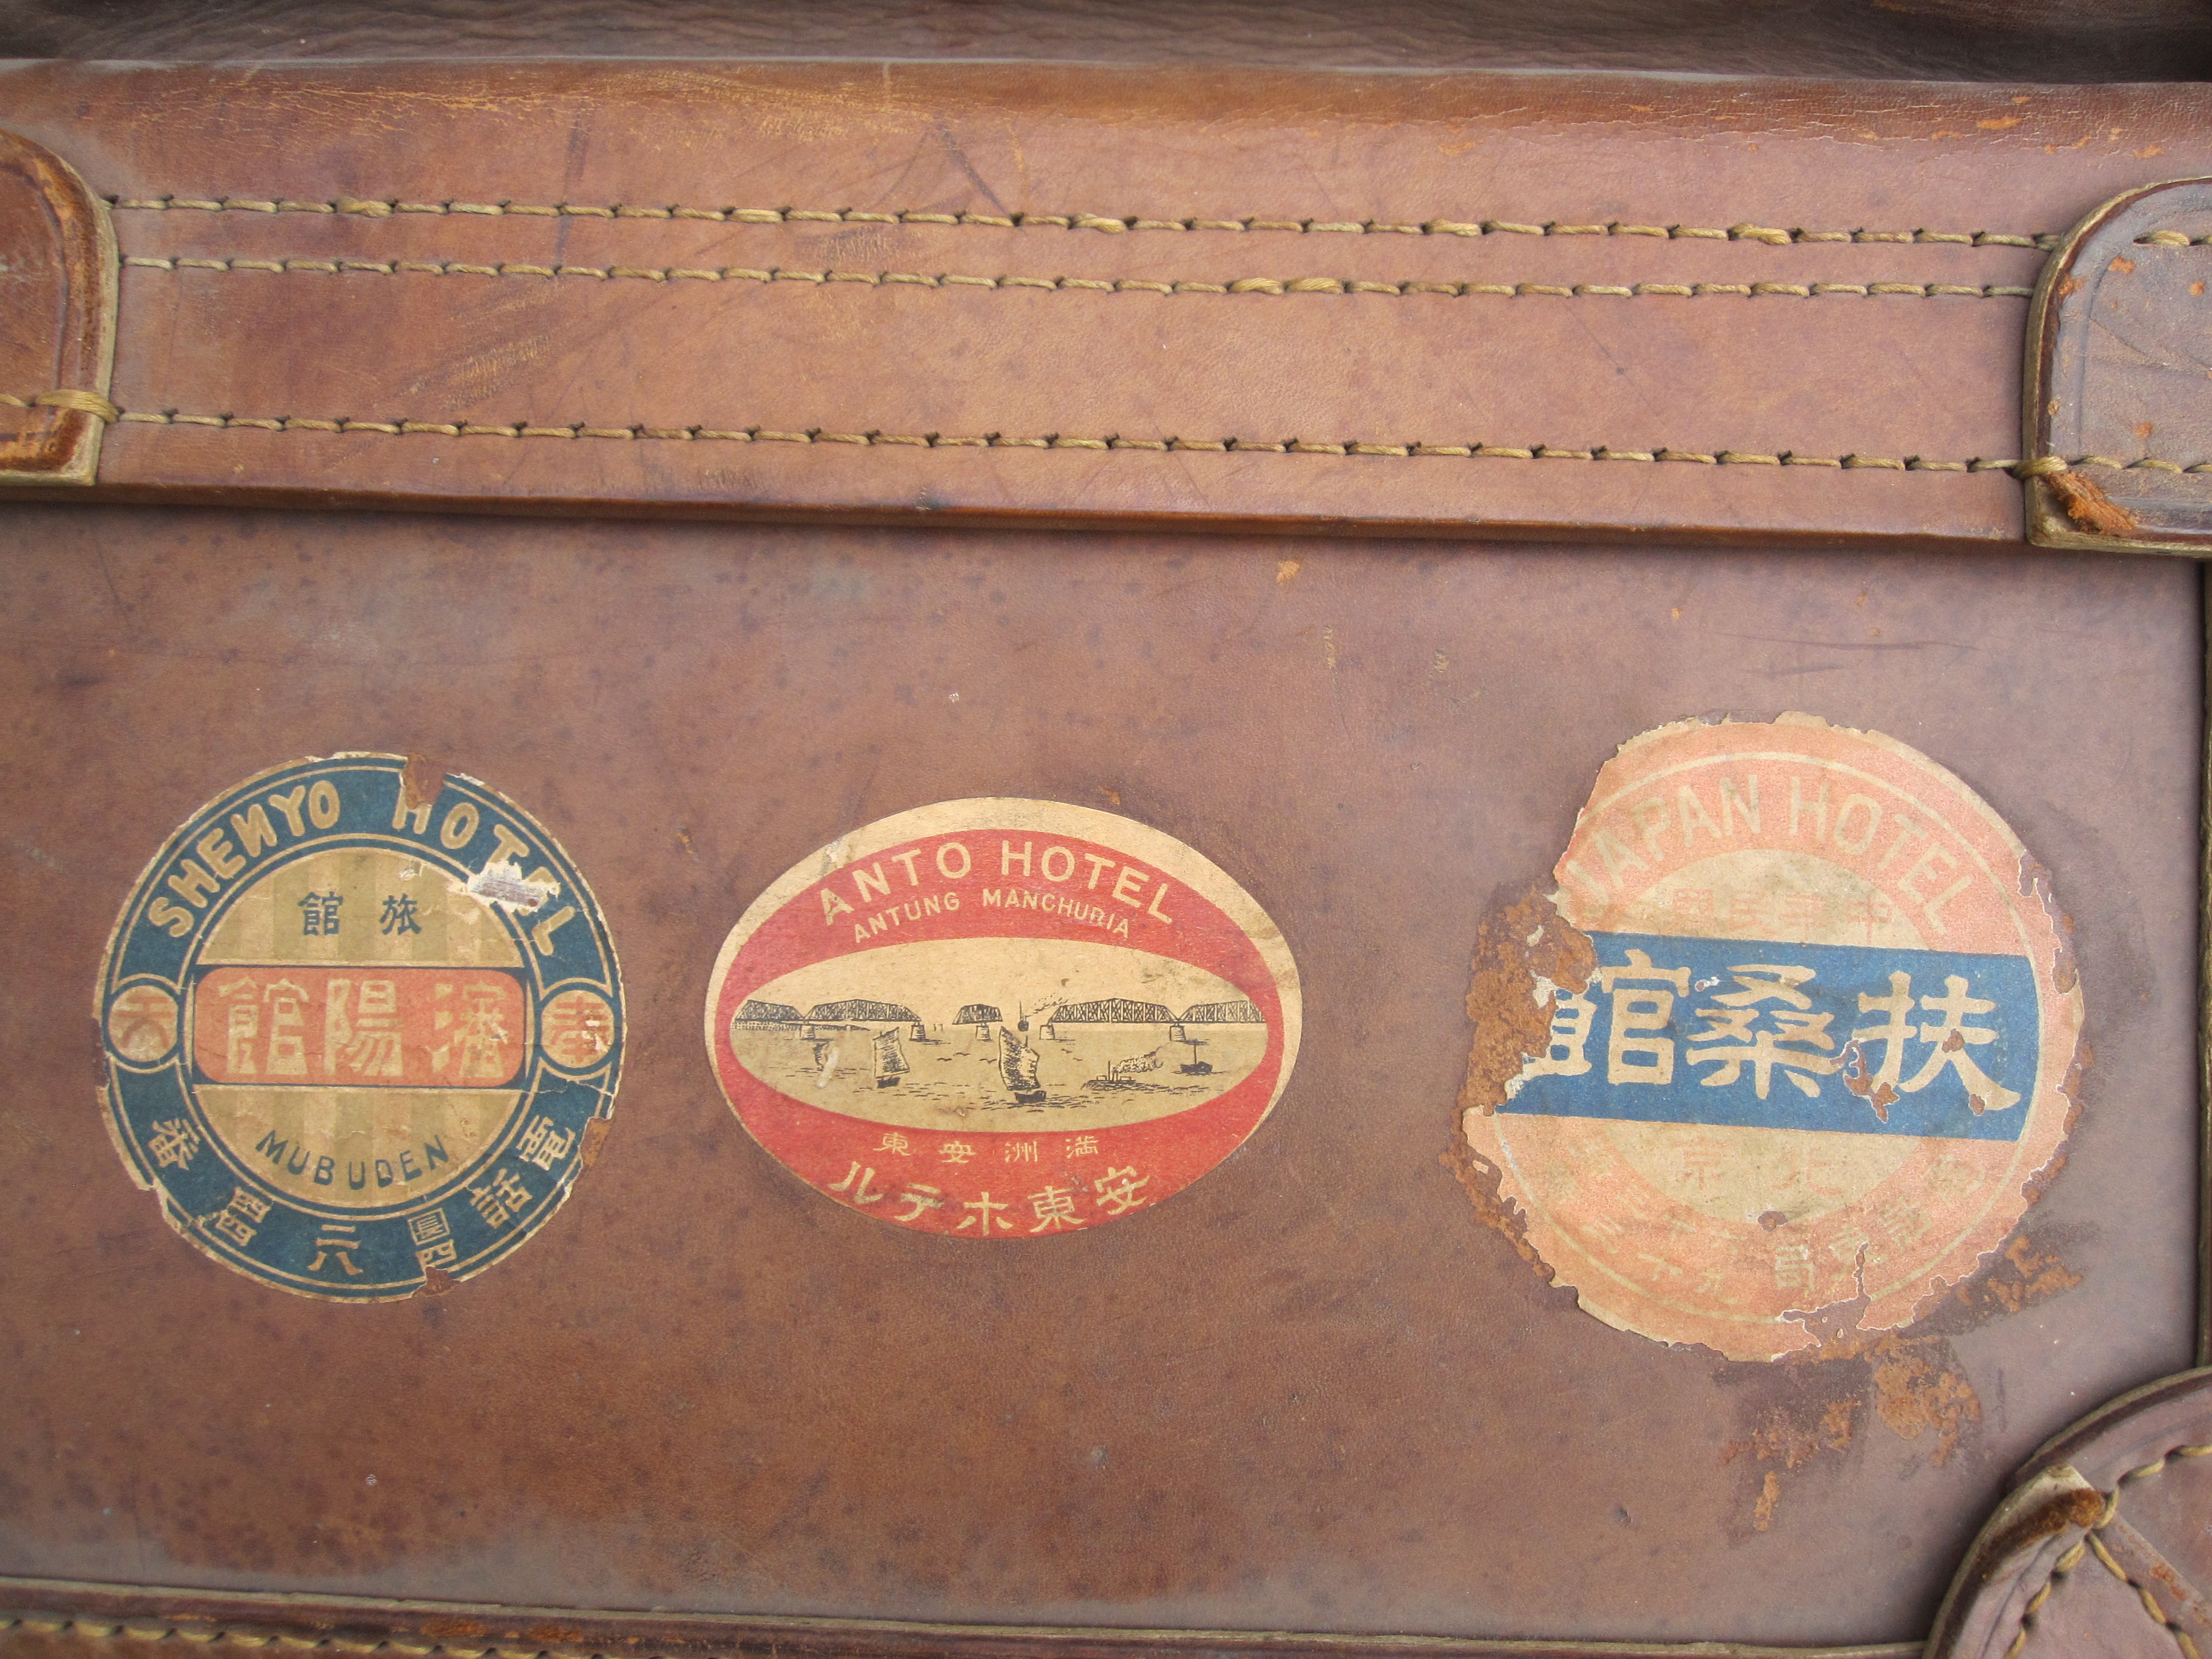 Anto hotel label vintage Yamamura suitcase